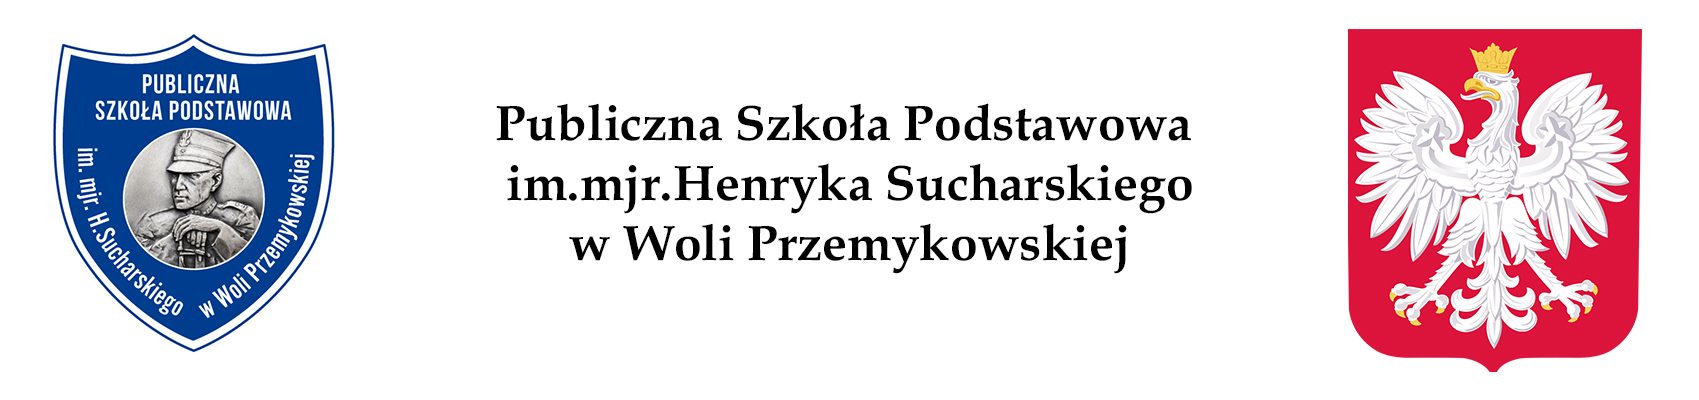 Publiczna Szkoła Podstawowa im.mjr.H.Sucharskiego w Woli Przemykowskiej